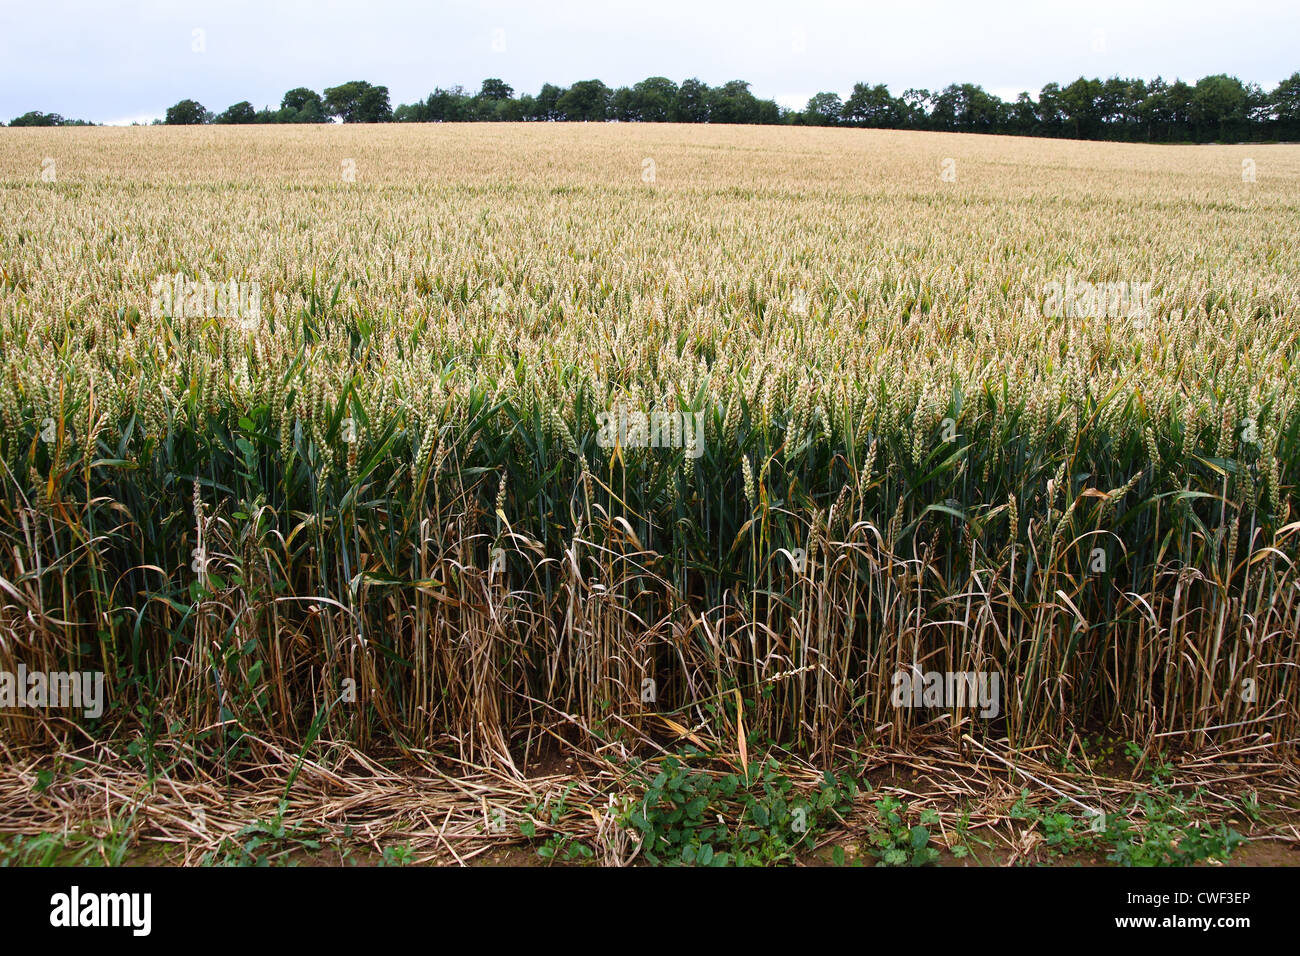 Cosecha de trigo a finales del verano, principalmente los tallos de trigo verde con la maduración cabezas de semillas Foto de stock